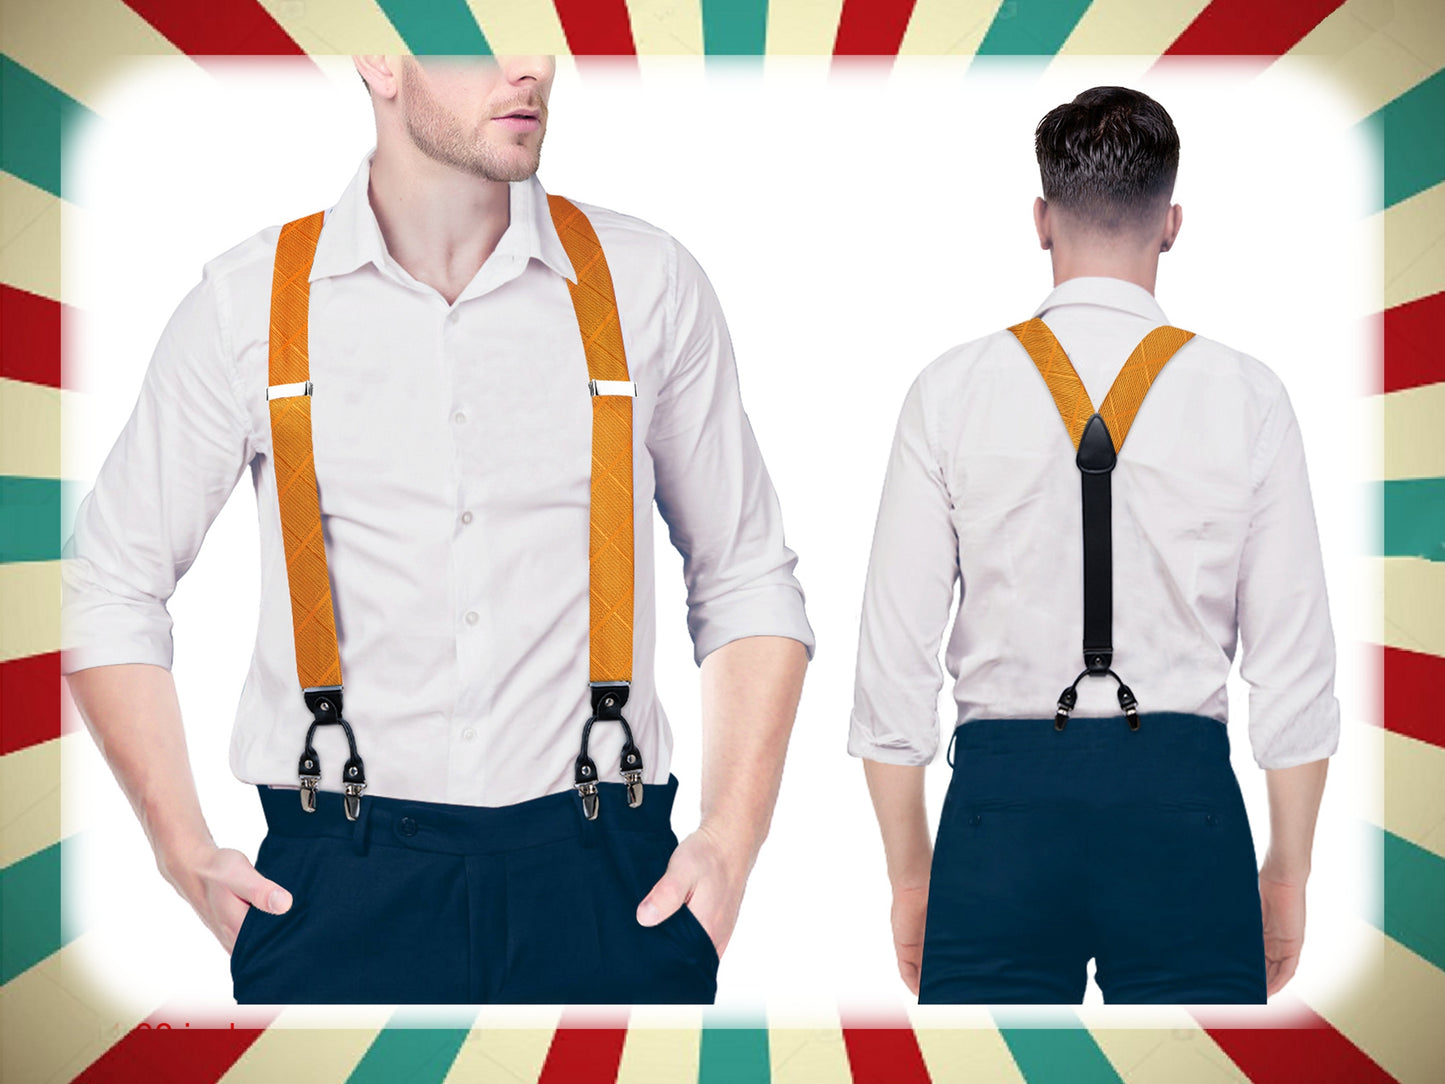 BD4017 Men's Braces Designer Clip Suspender Set [Yard Orange]